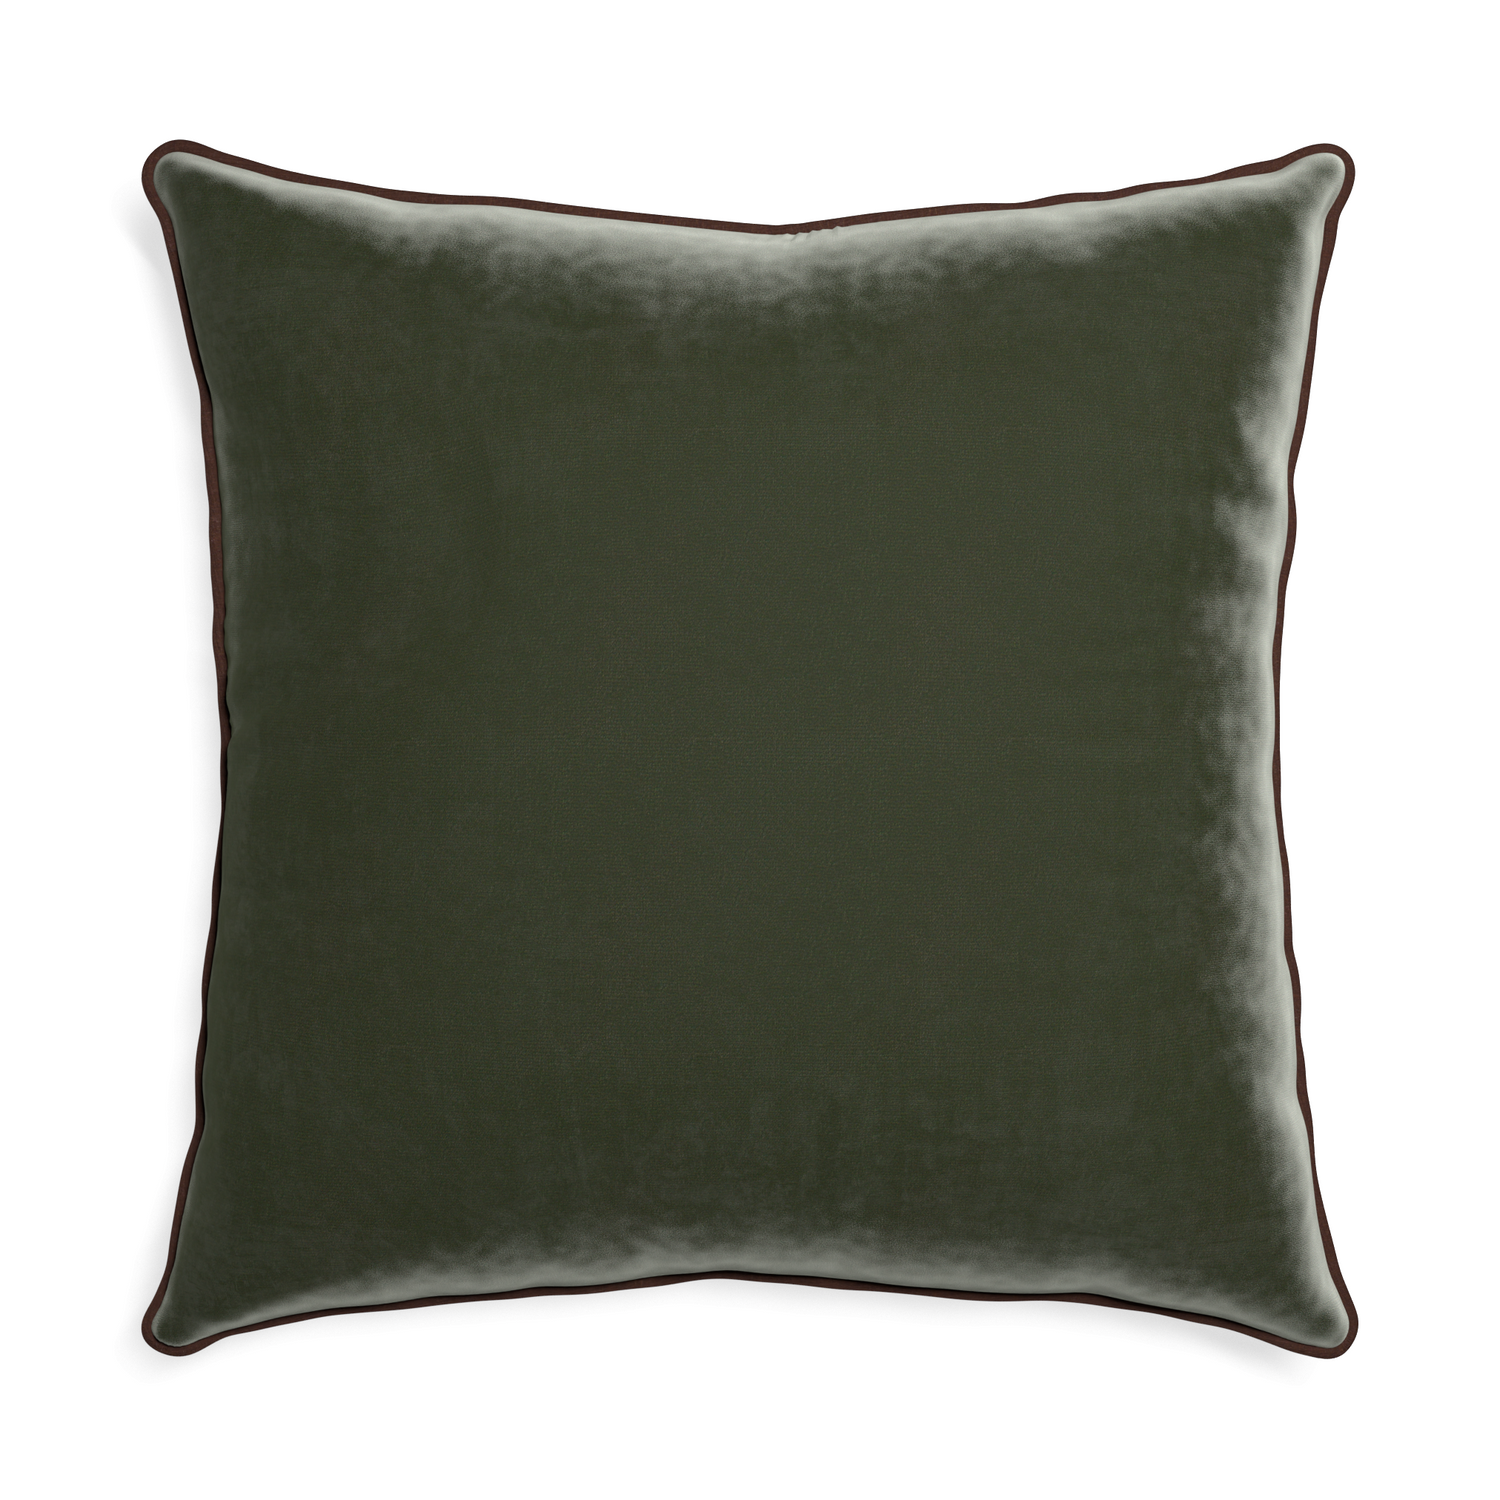 Euro-sham fern velvet custom pillow with w piping on white background